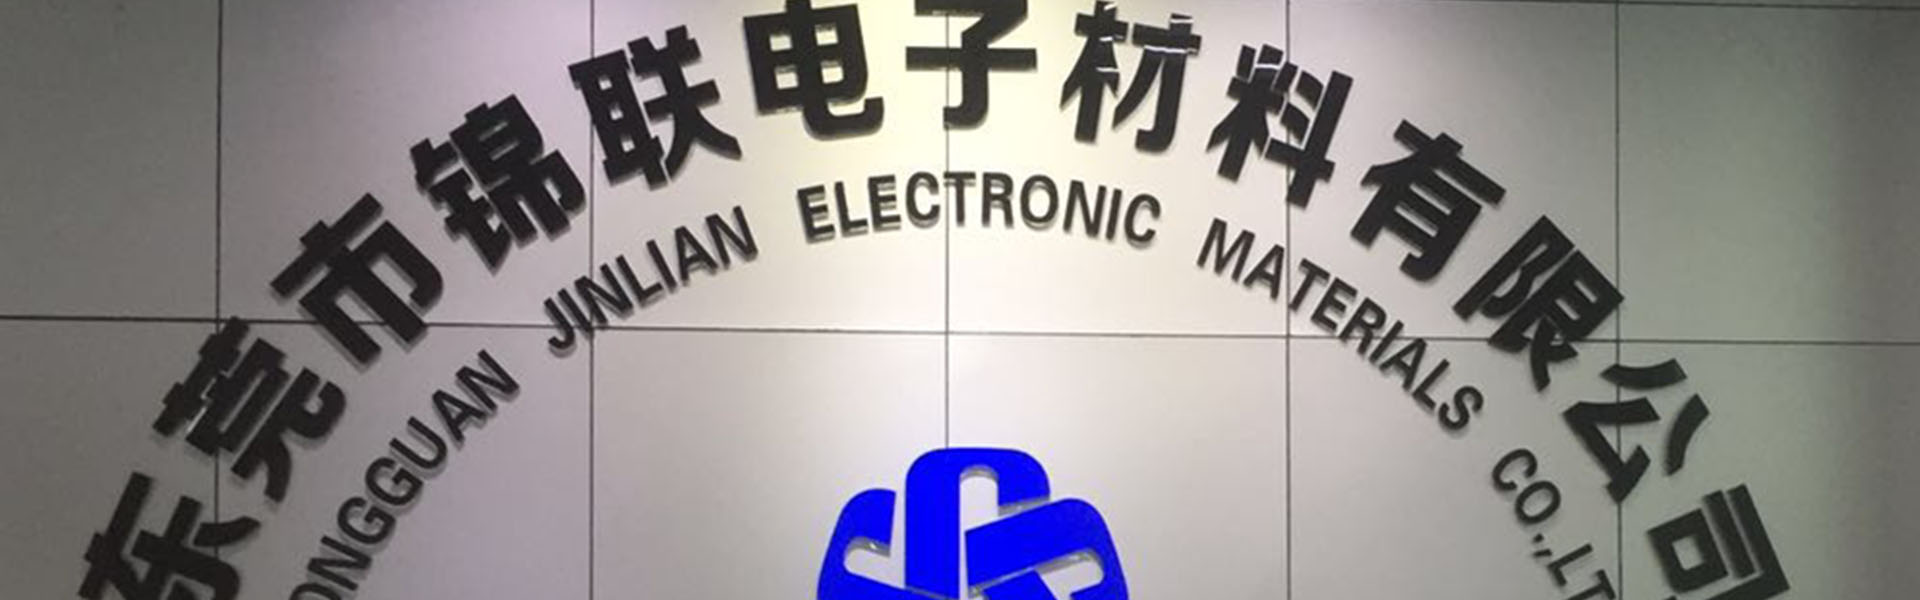 caixa de bolhas, bandeja, fita de transportadora,Dongguan Jinlian Electronic Materials Co., Ltd